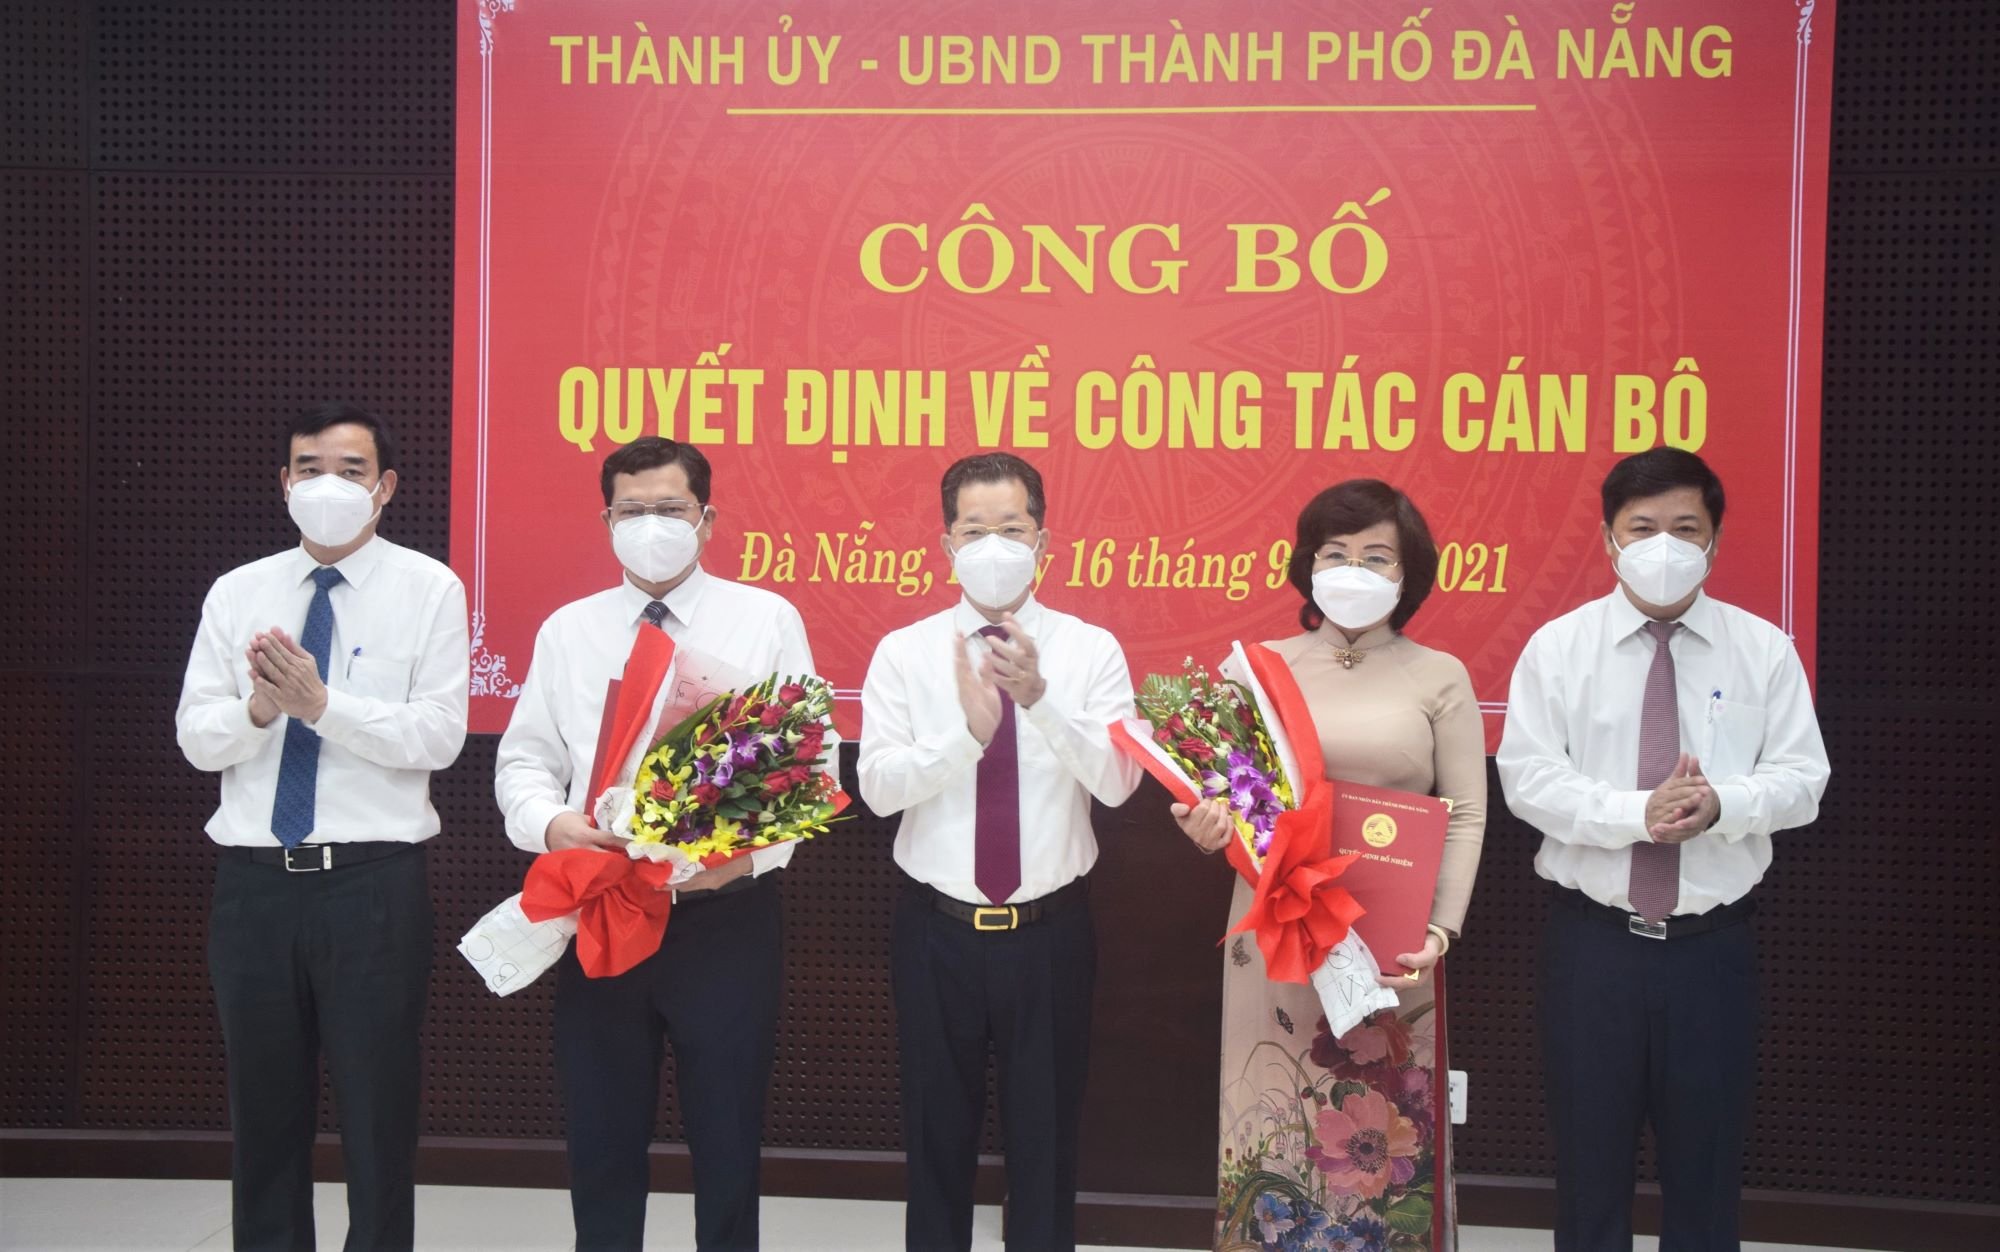 Ông Trần Phước Sơn, và bà Ngô Thị Kim Yến được Thủ tướng Chính phủ phê chuẩn kết quả bầu bổ sung các Phó Chủ tịch UBND thành phố Đà Nẵng.